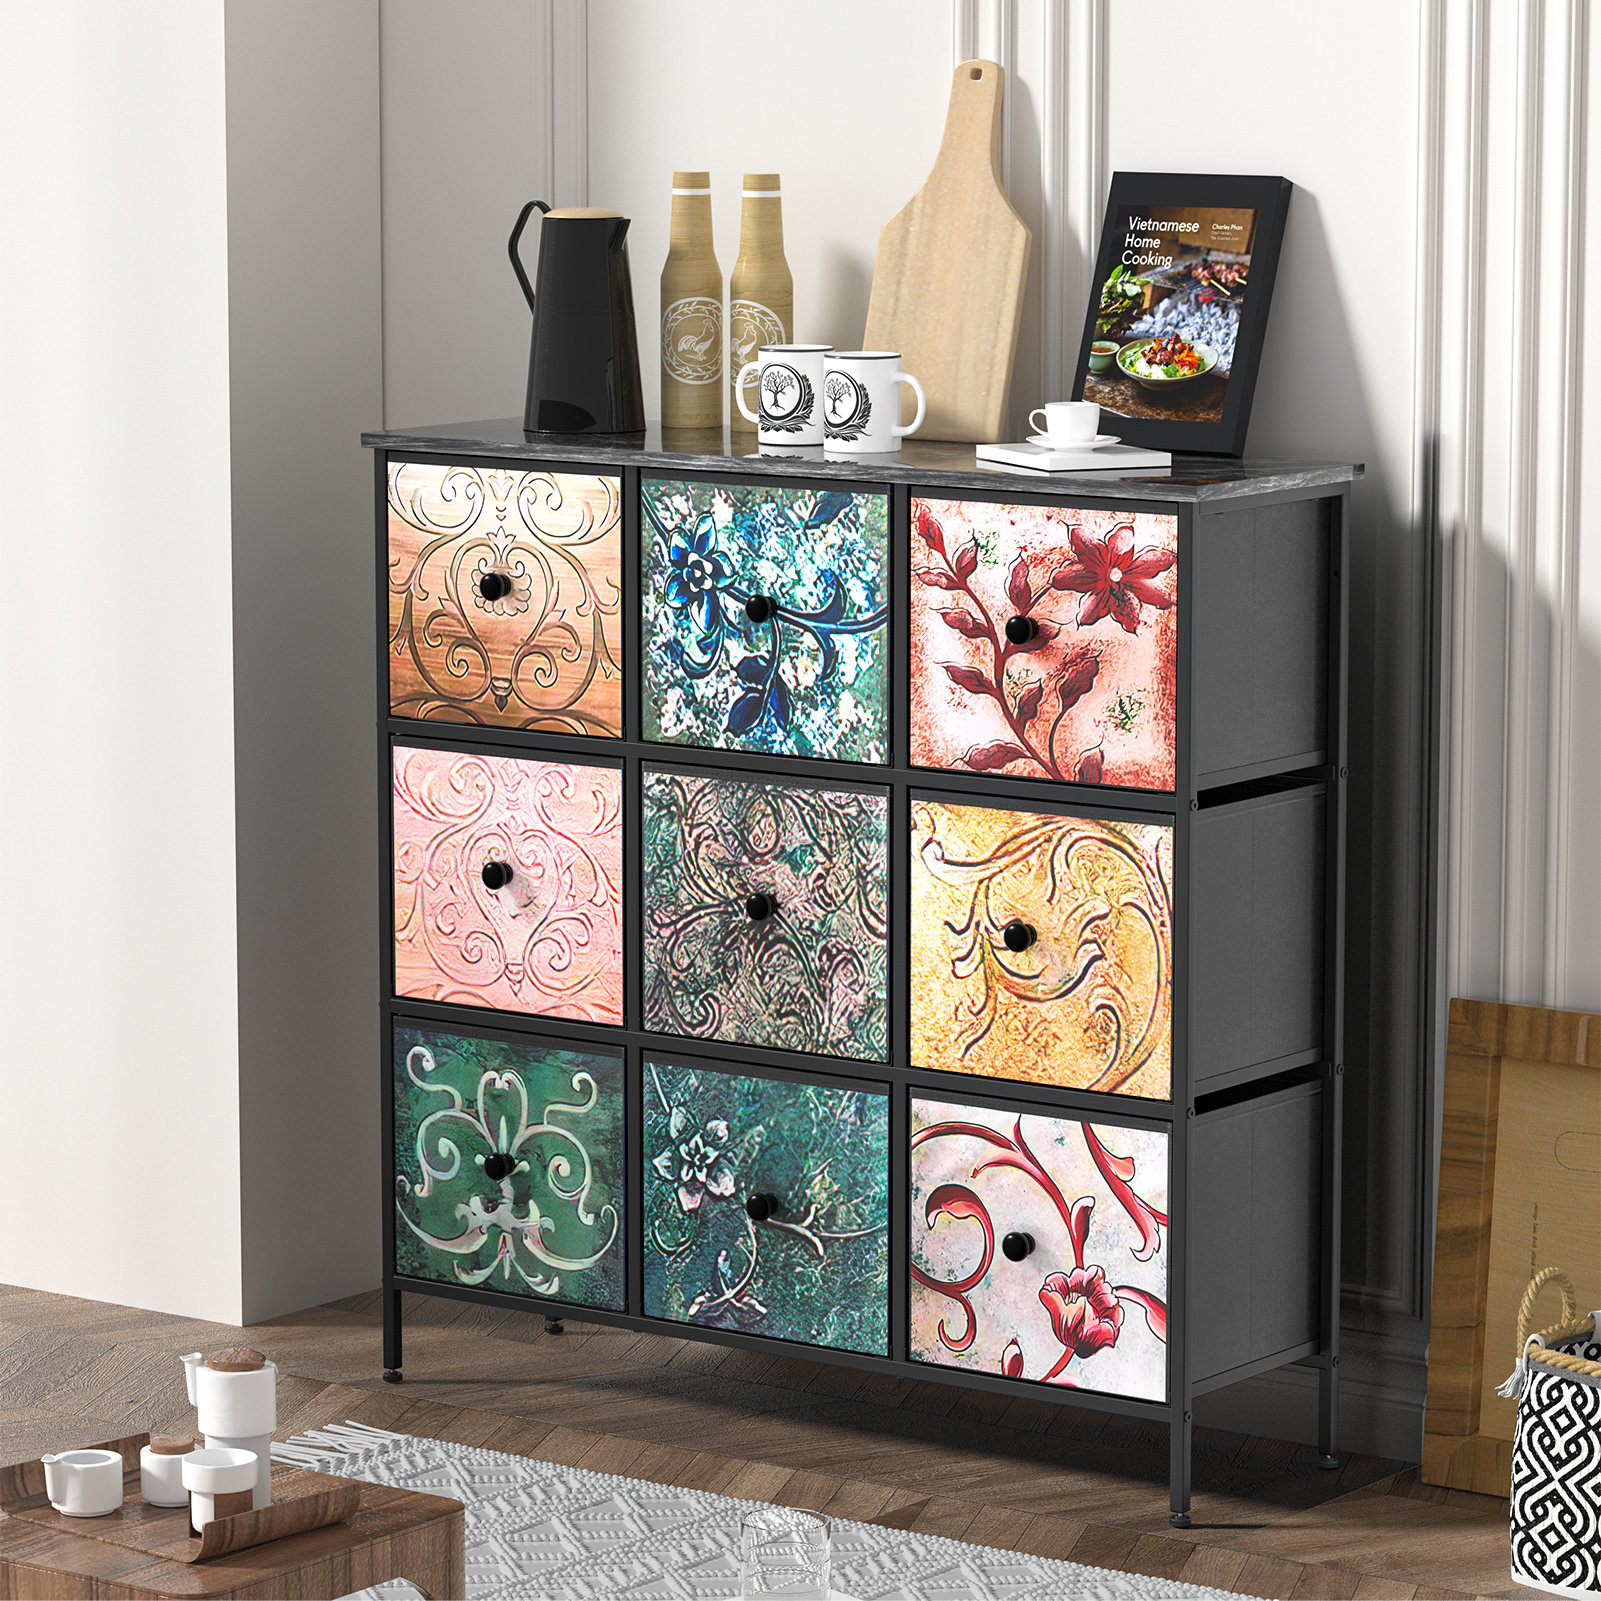 9-Drawer Storage Cabinet | Arteza